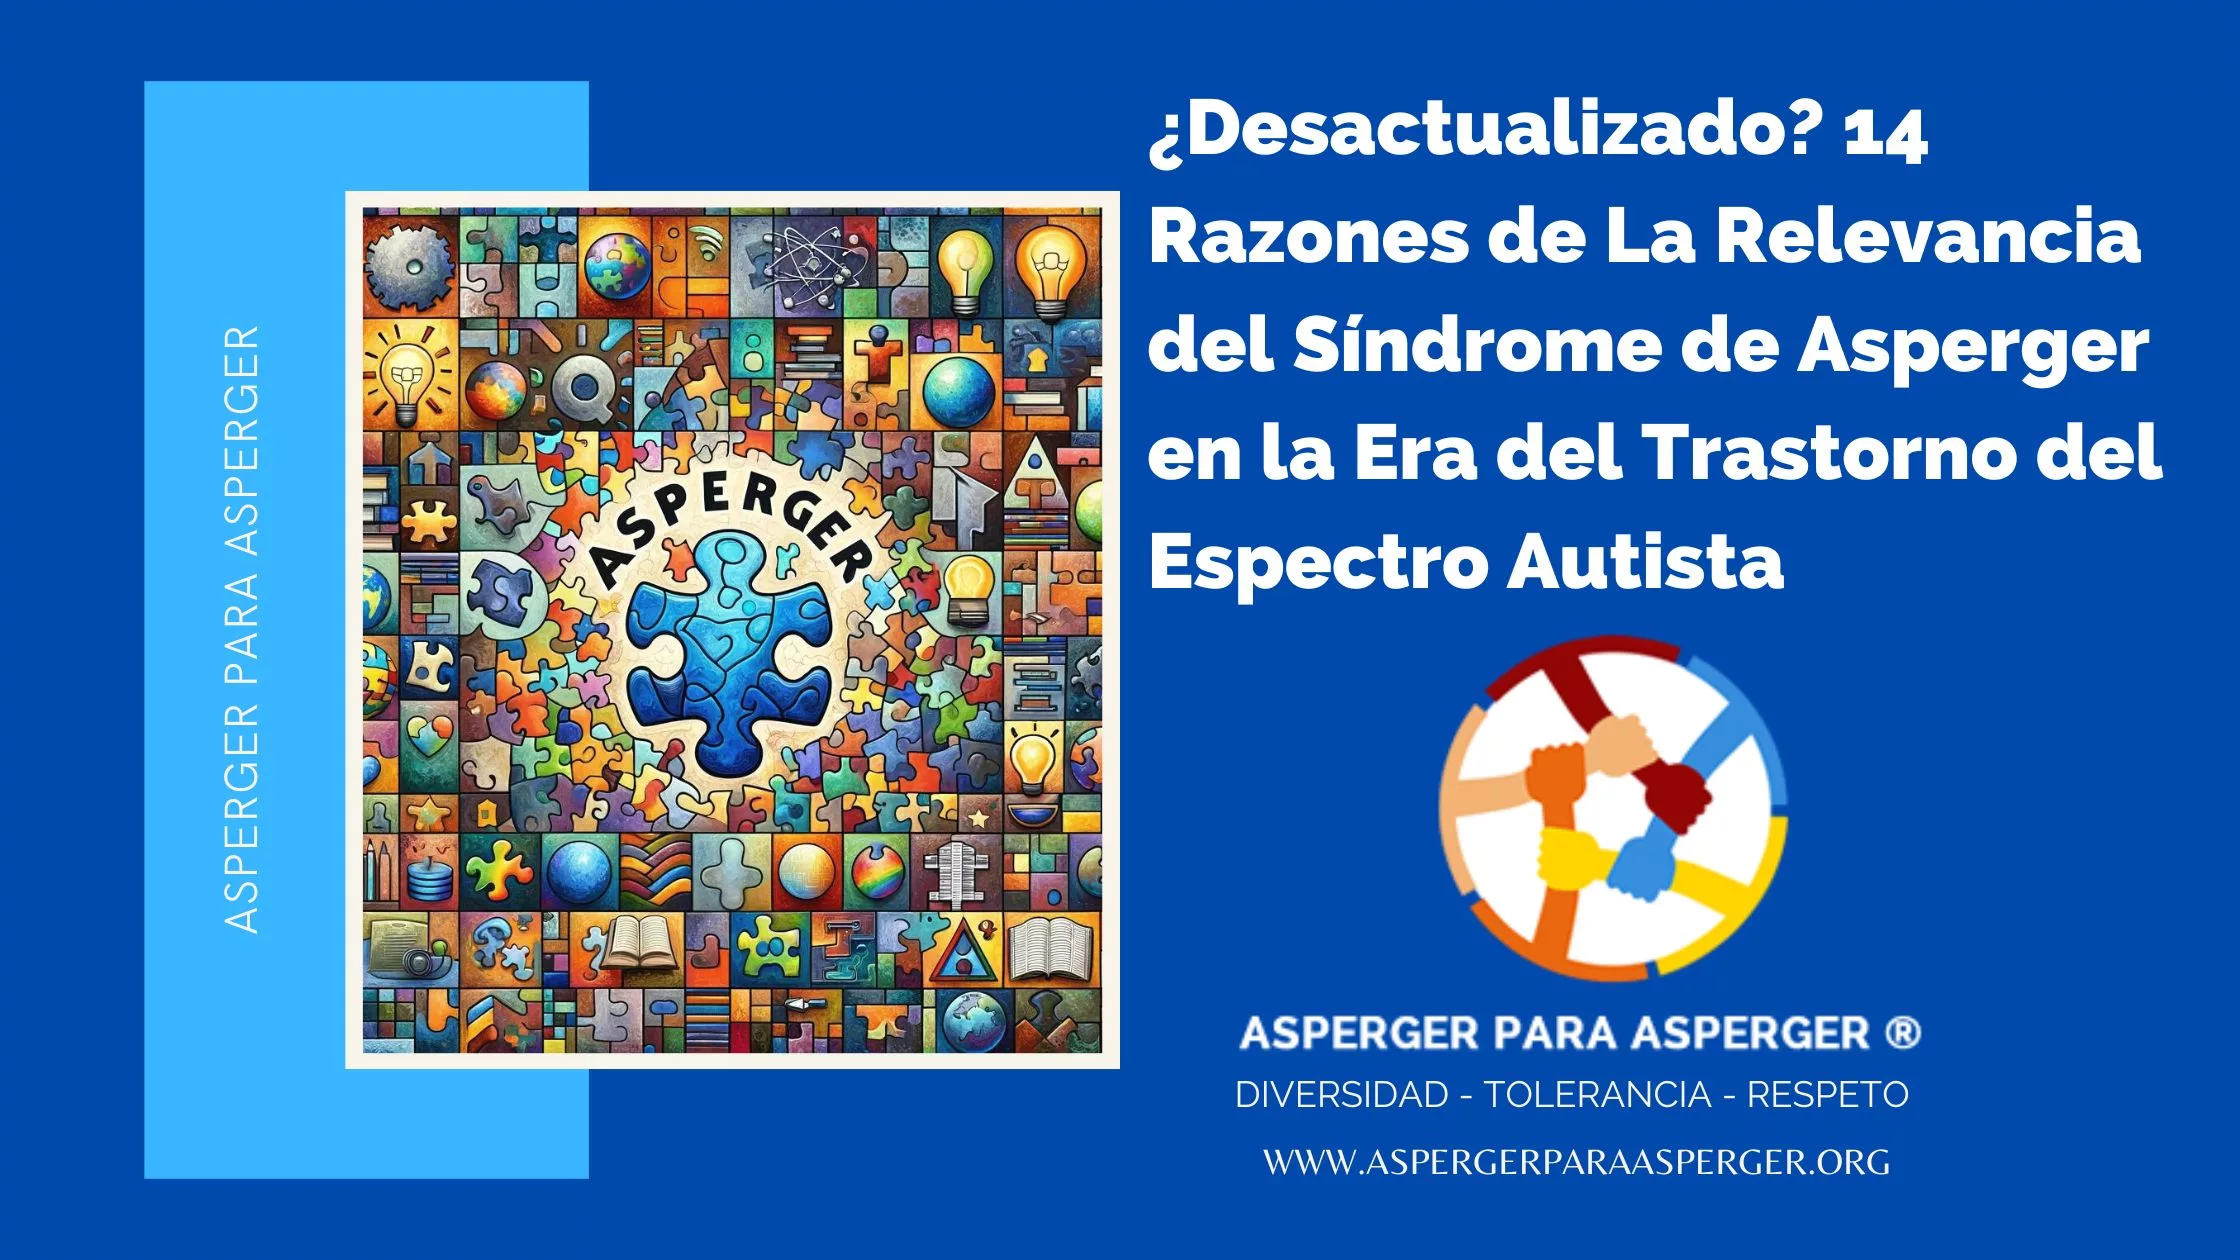 ¿Desactualizado? 14 La Relevancia del Síndrome de Asperger en la Era del Trastorno del Espectro Autista